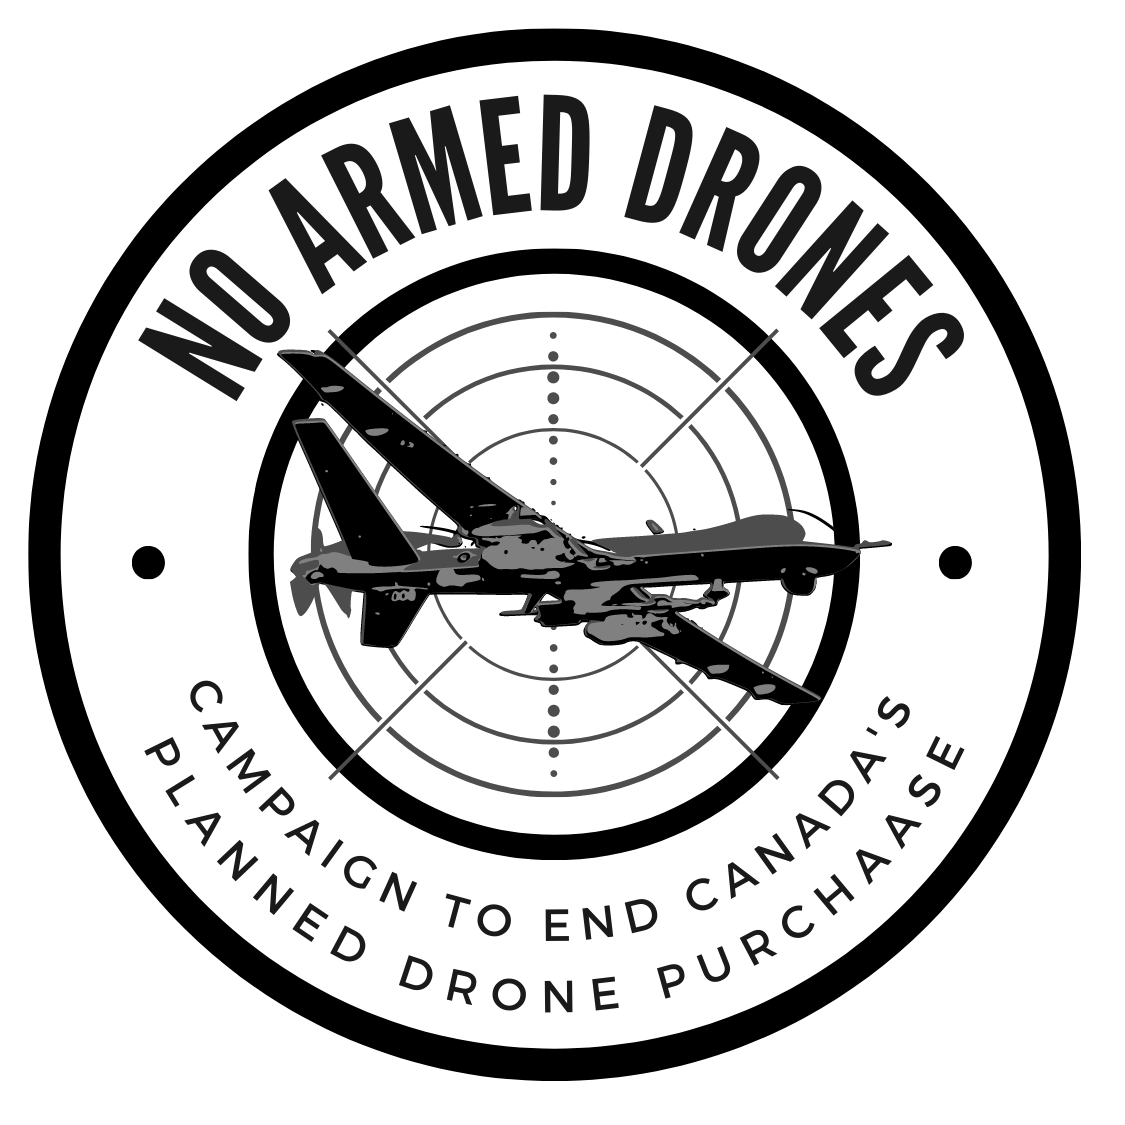 No Armed Drones